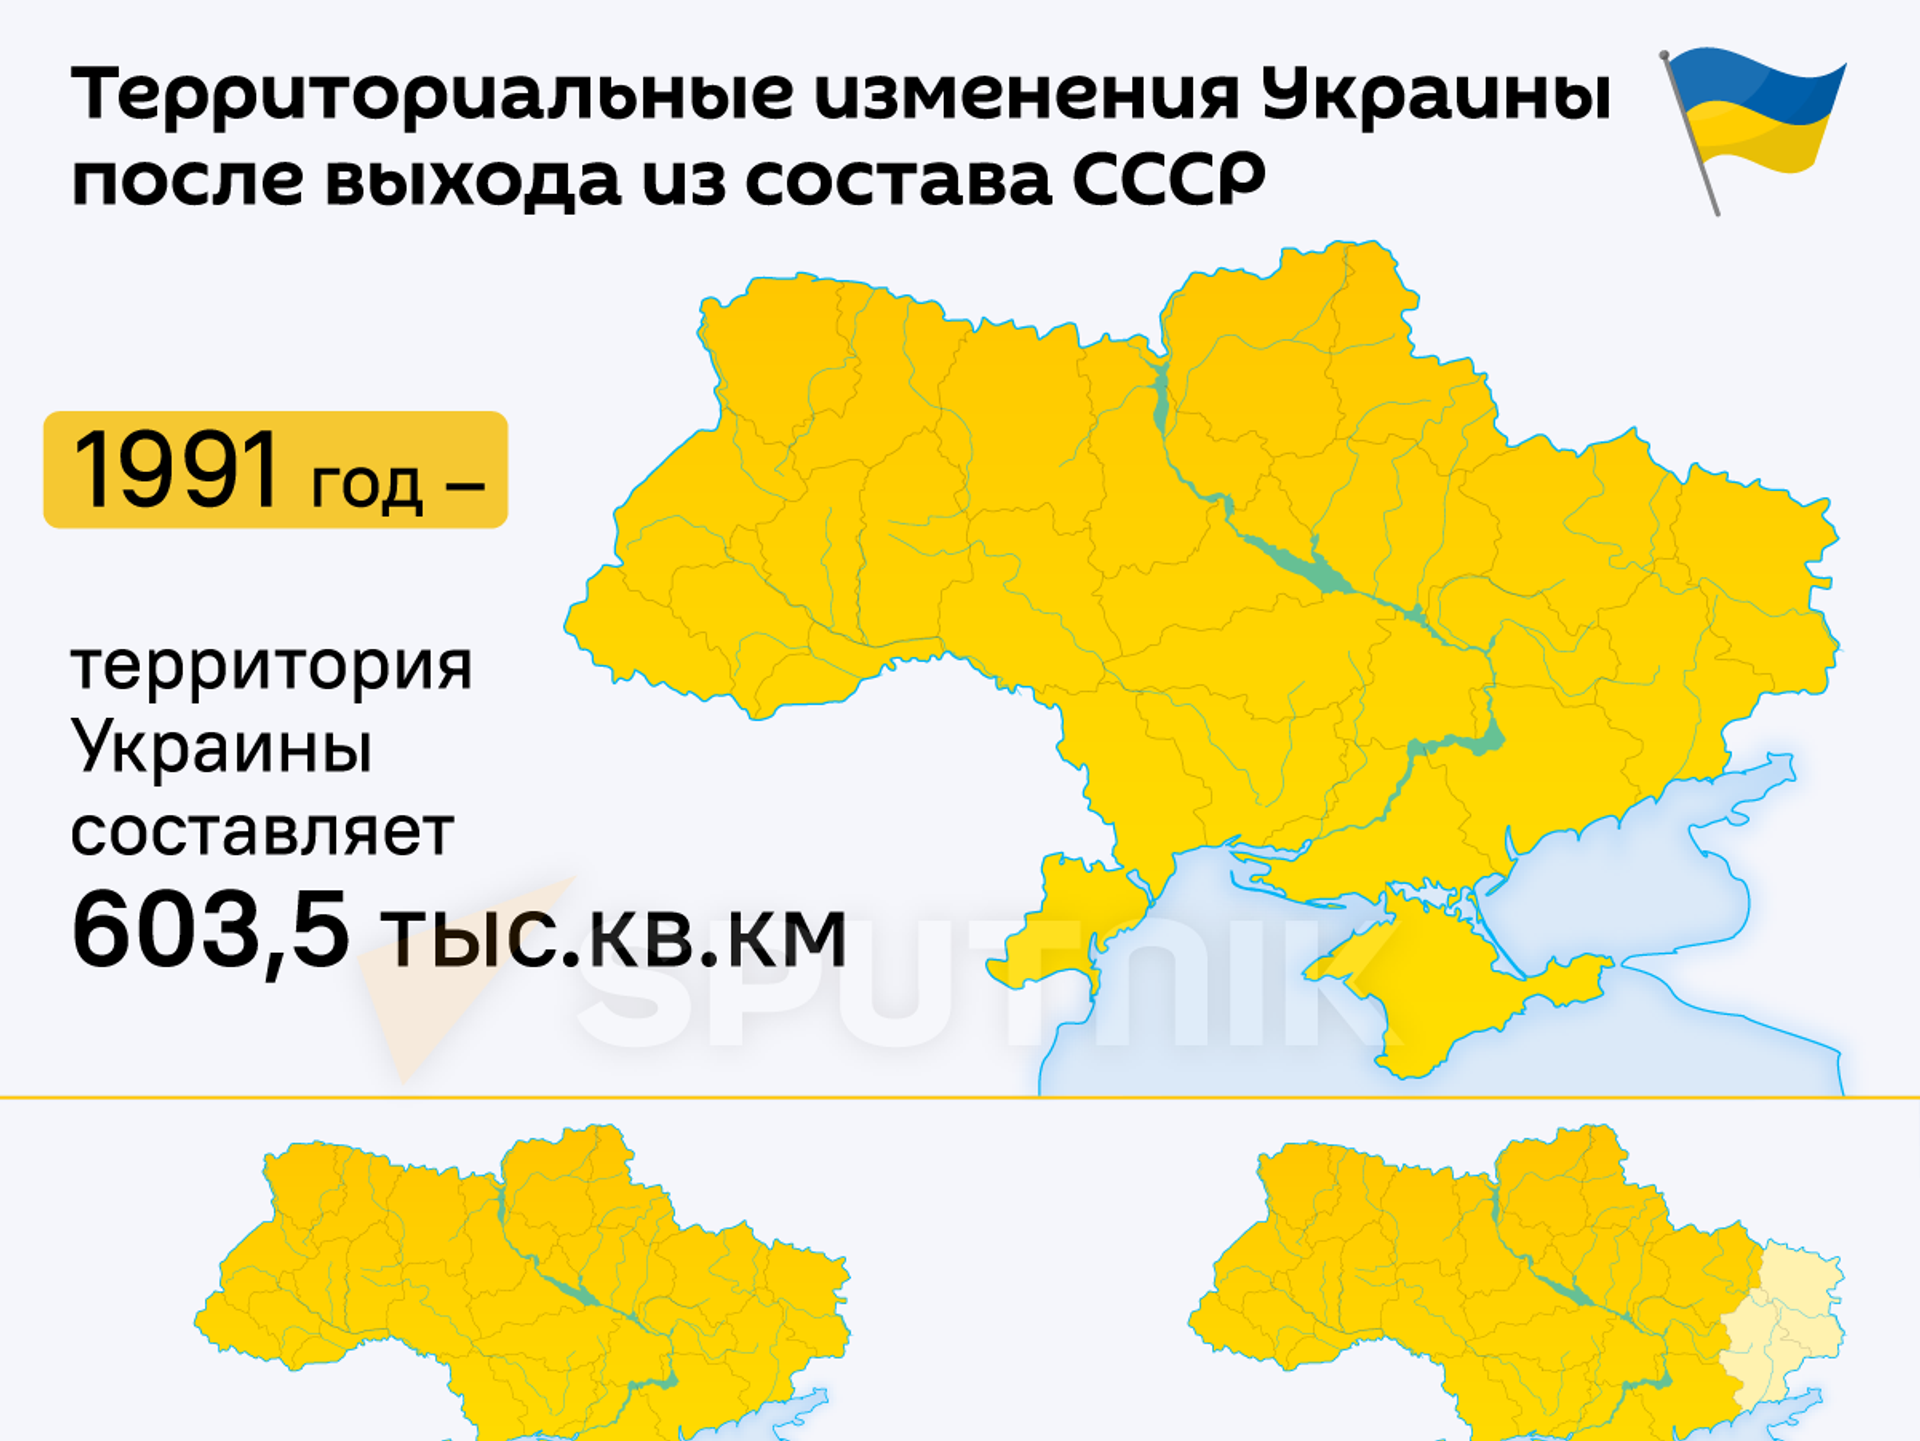 Какая должна быть украина. Территрория уарпинв. Территория Укран. Территория Украины 2014 года. Территория Украины 1991 года.